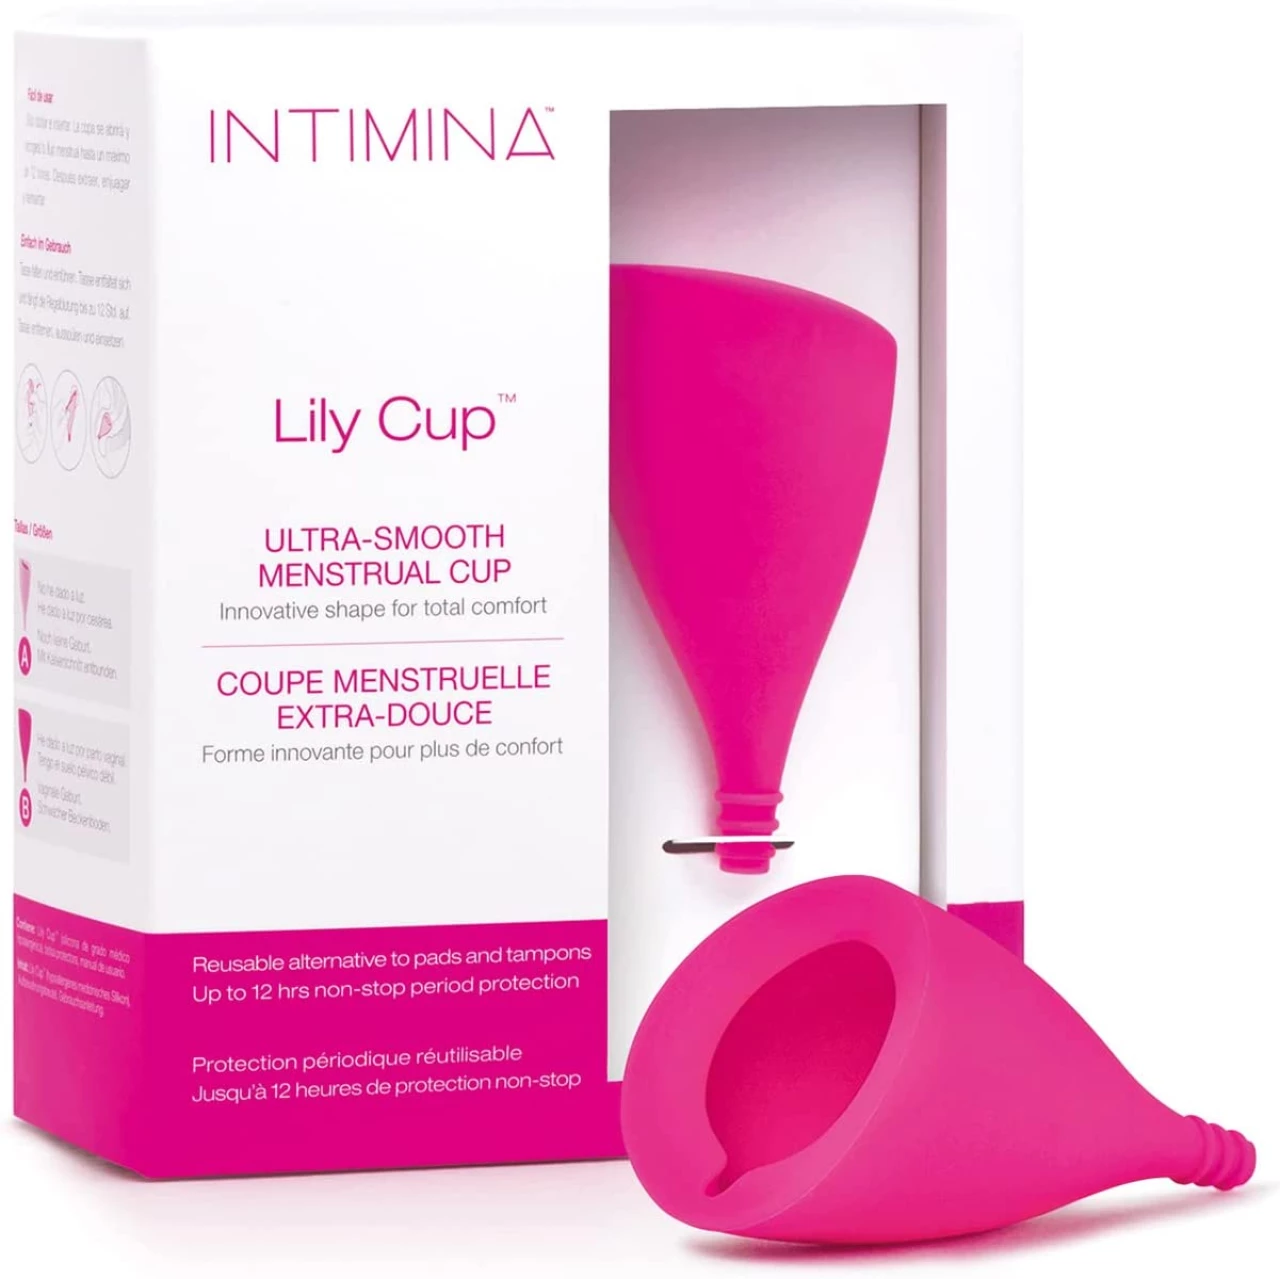 Intimina - Lily Cup, talla B: Copa Menstrual Fina para tus Reglas que Podrás Usar durante hasta 8 Horas